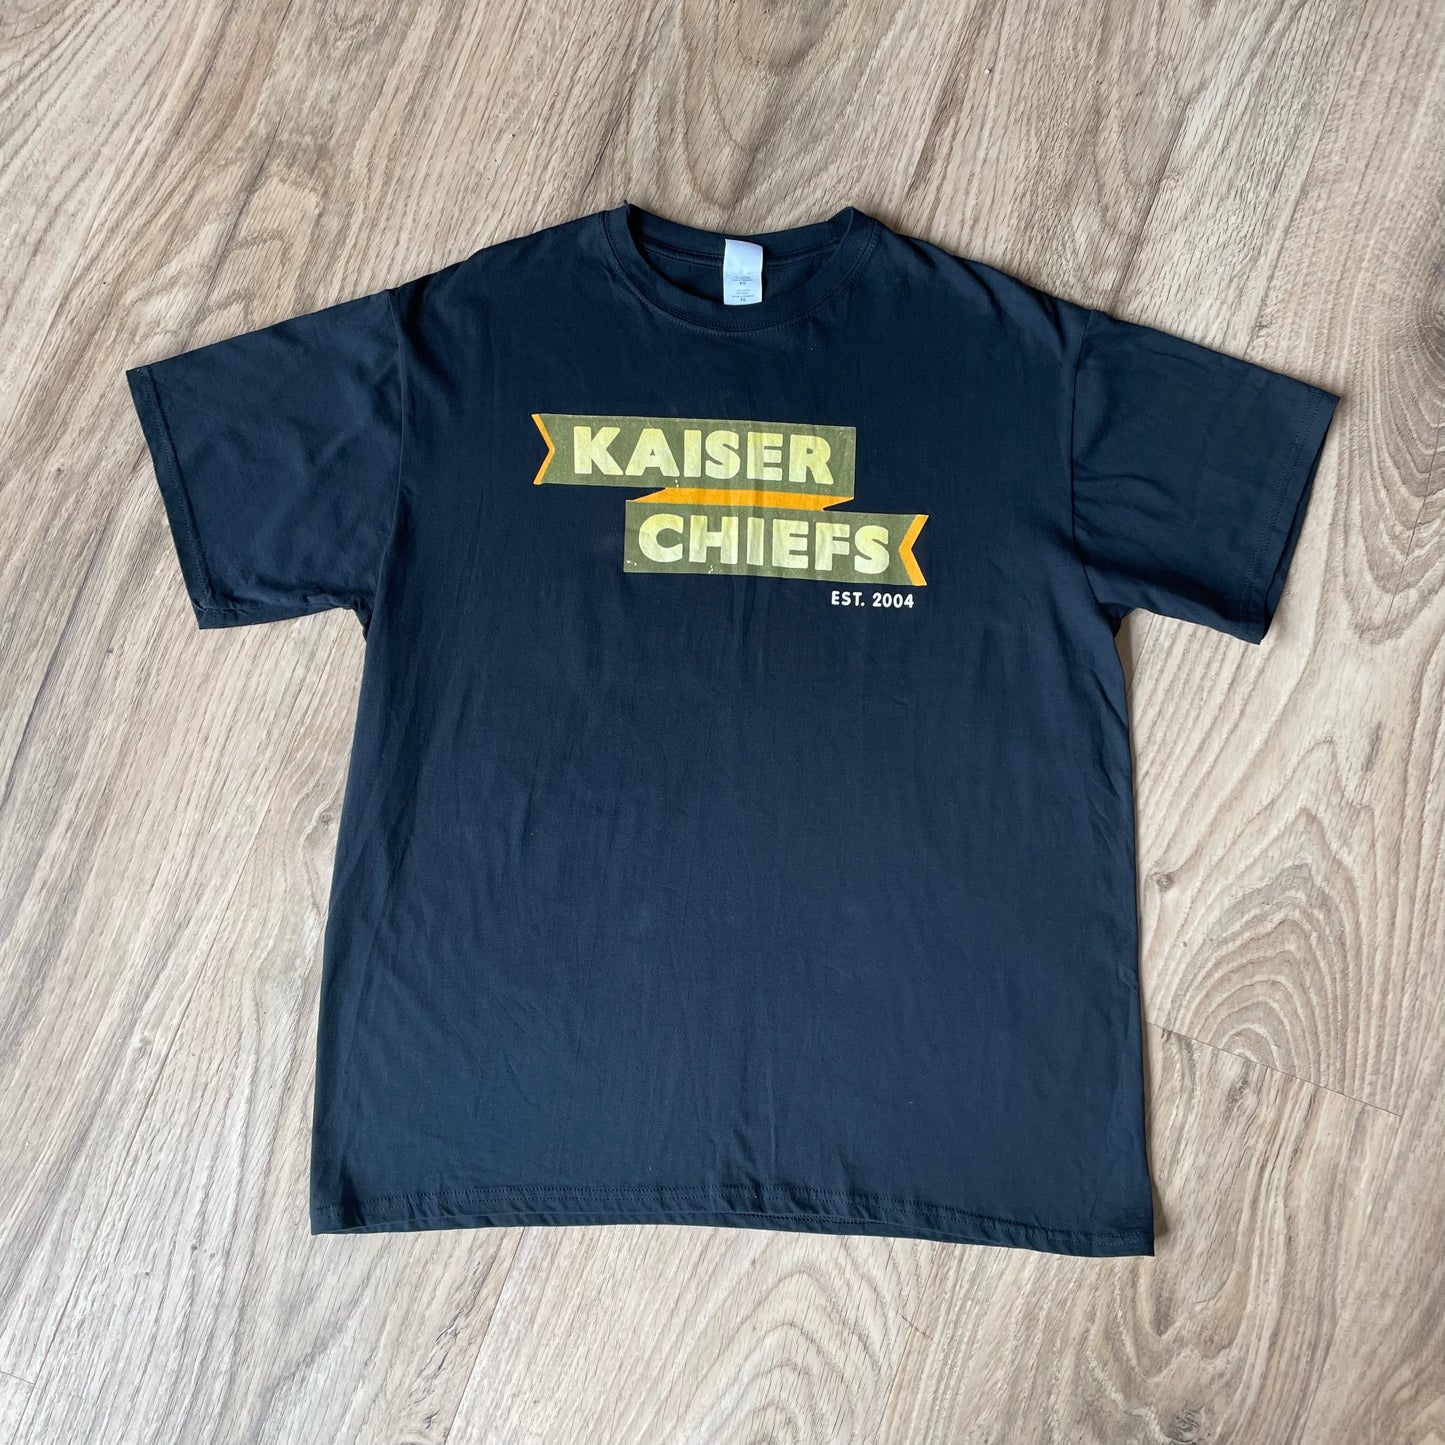 Kaiser Chiefs Band T-shirt